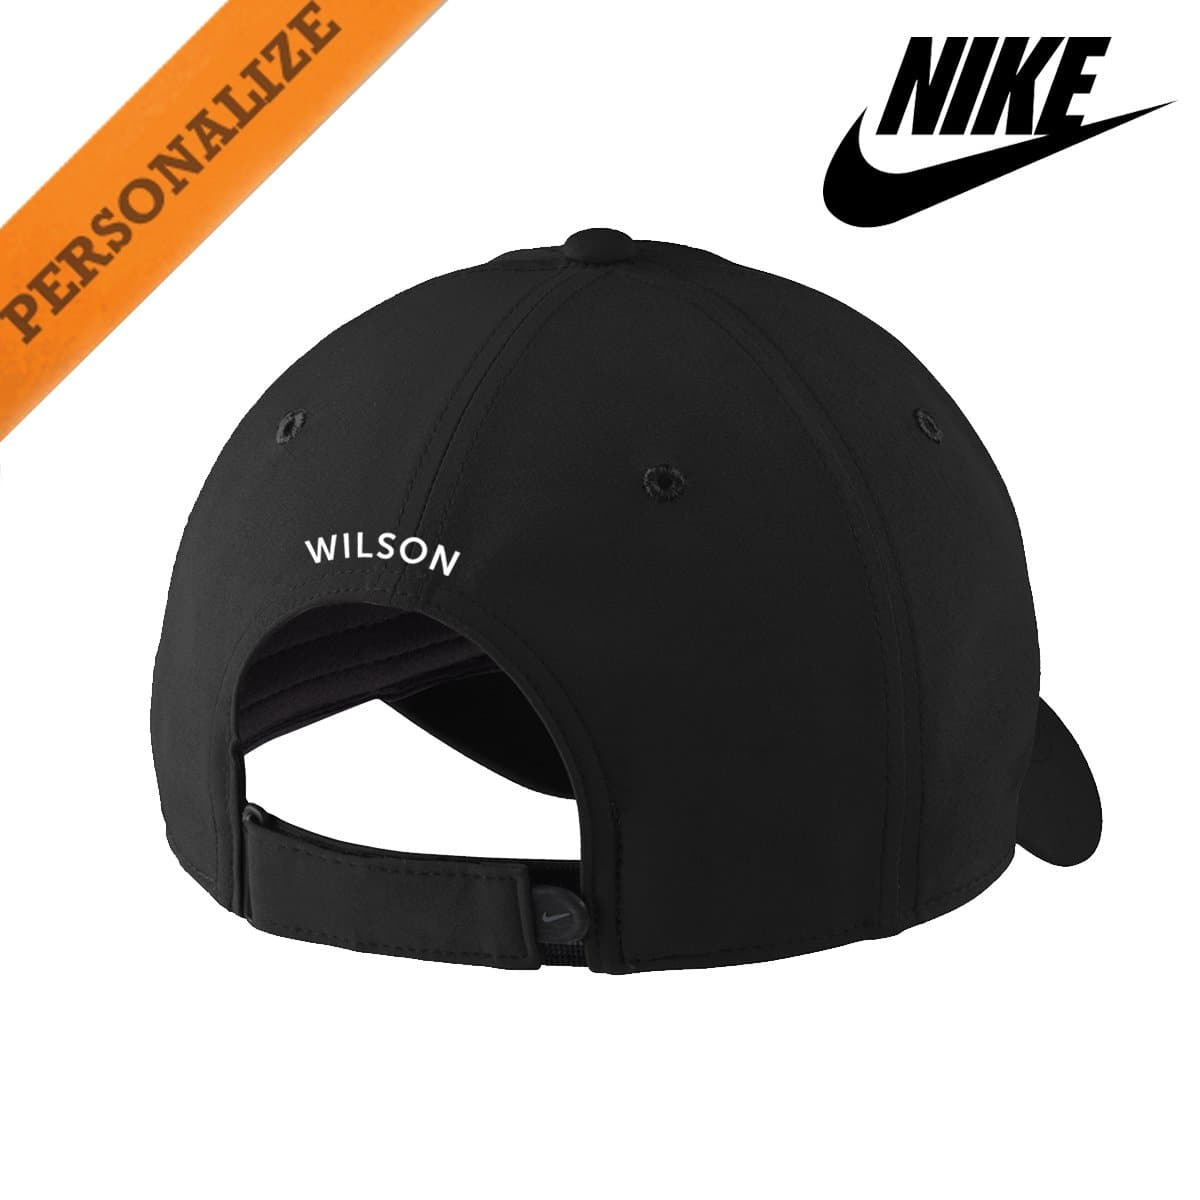 Kappa Alpha Personalized Black Nike Dri-FIT Performance Hat | Kappa Alpha Order | Headwear > Billed hats